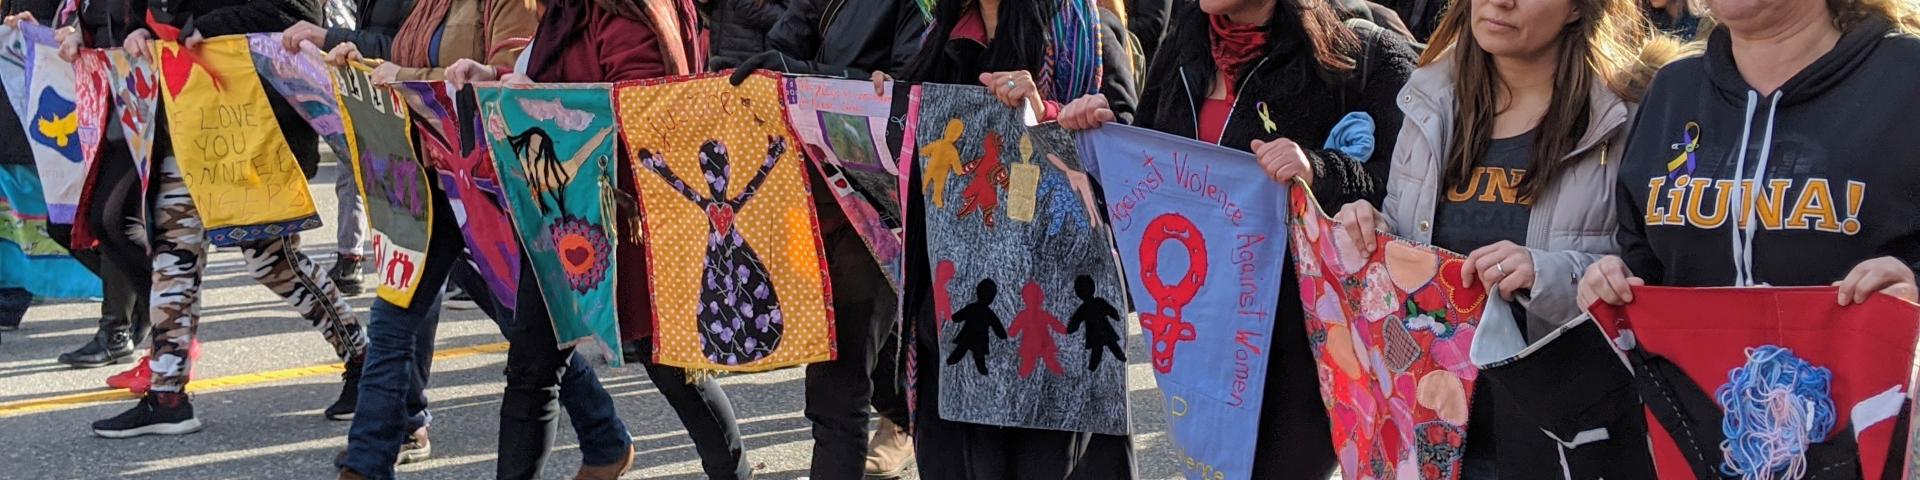 Women's Memorial March